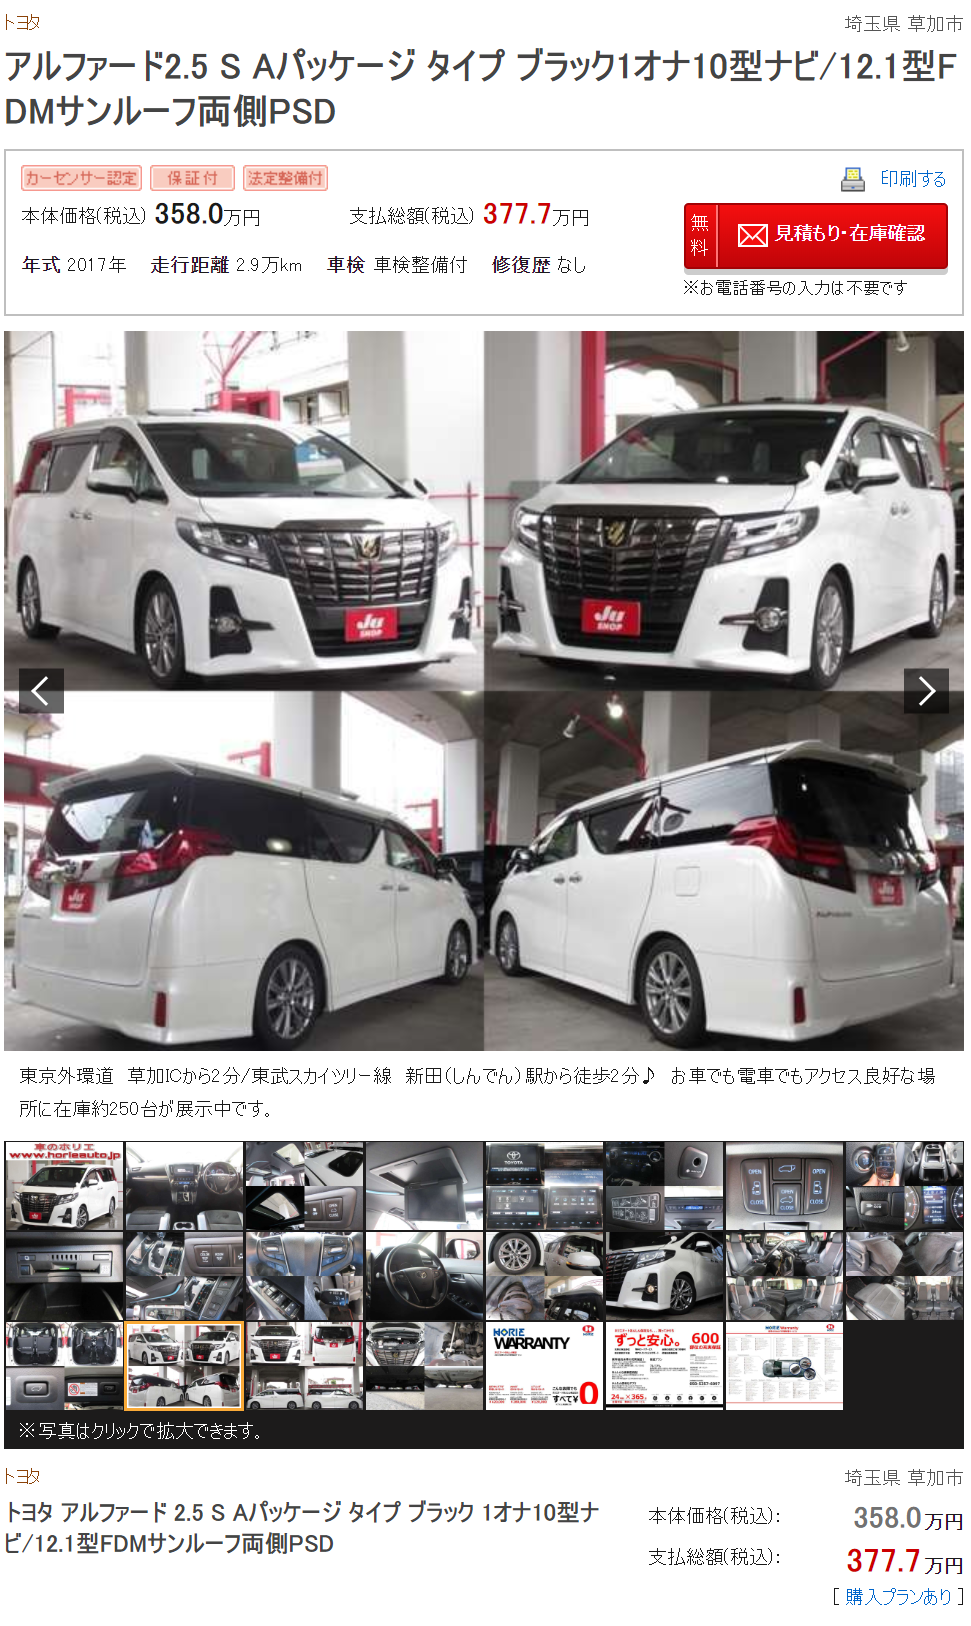 在日本买二手车有多爽 十万各种跑车 准新埃尔法二十多万随便买 手机凤凰网